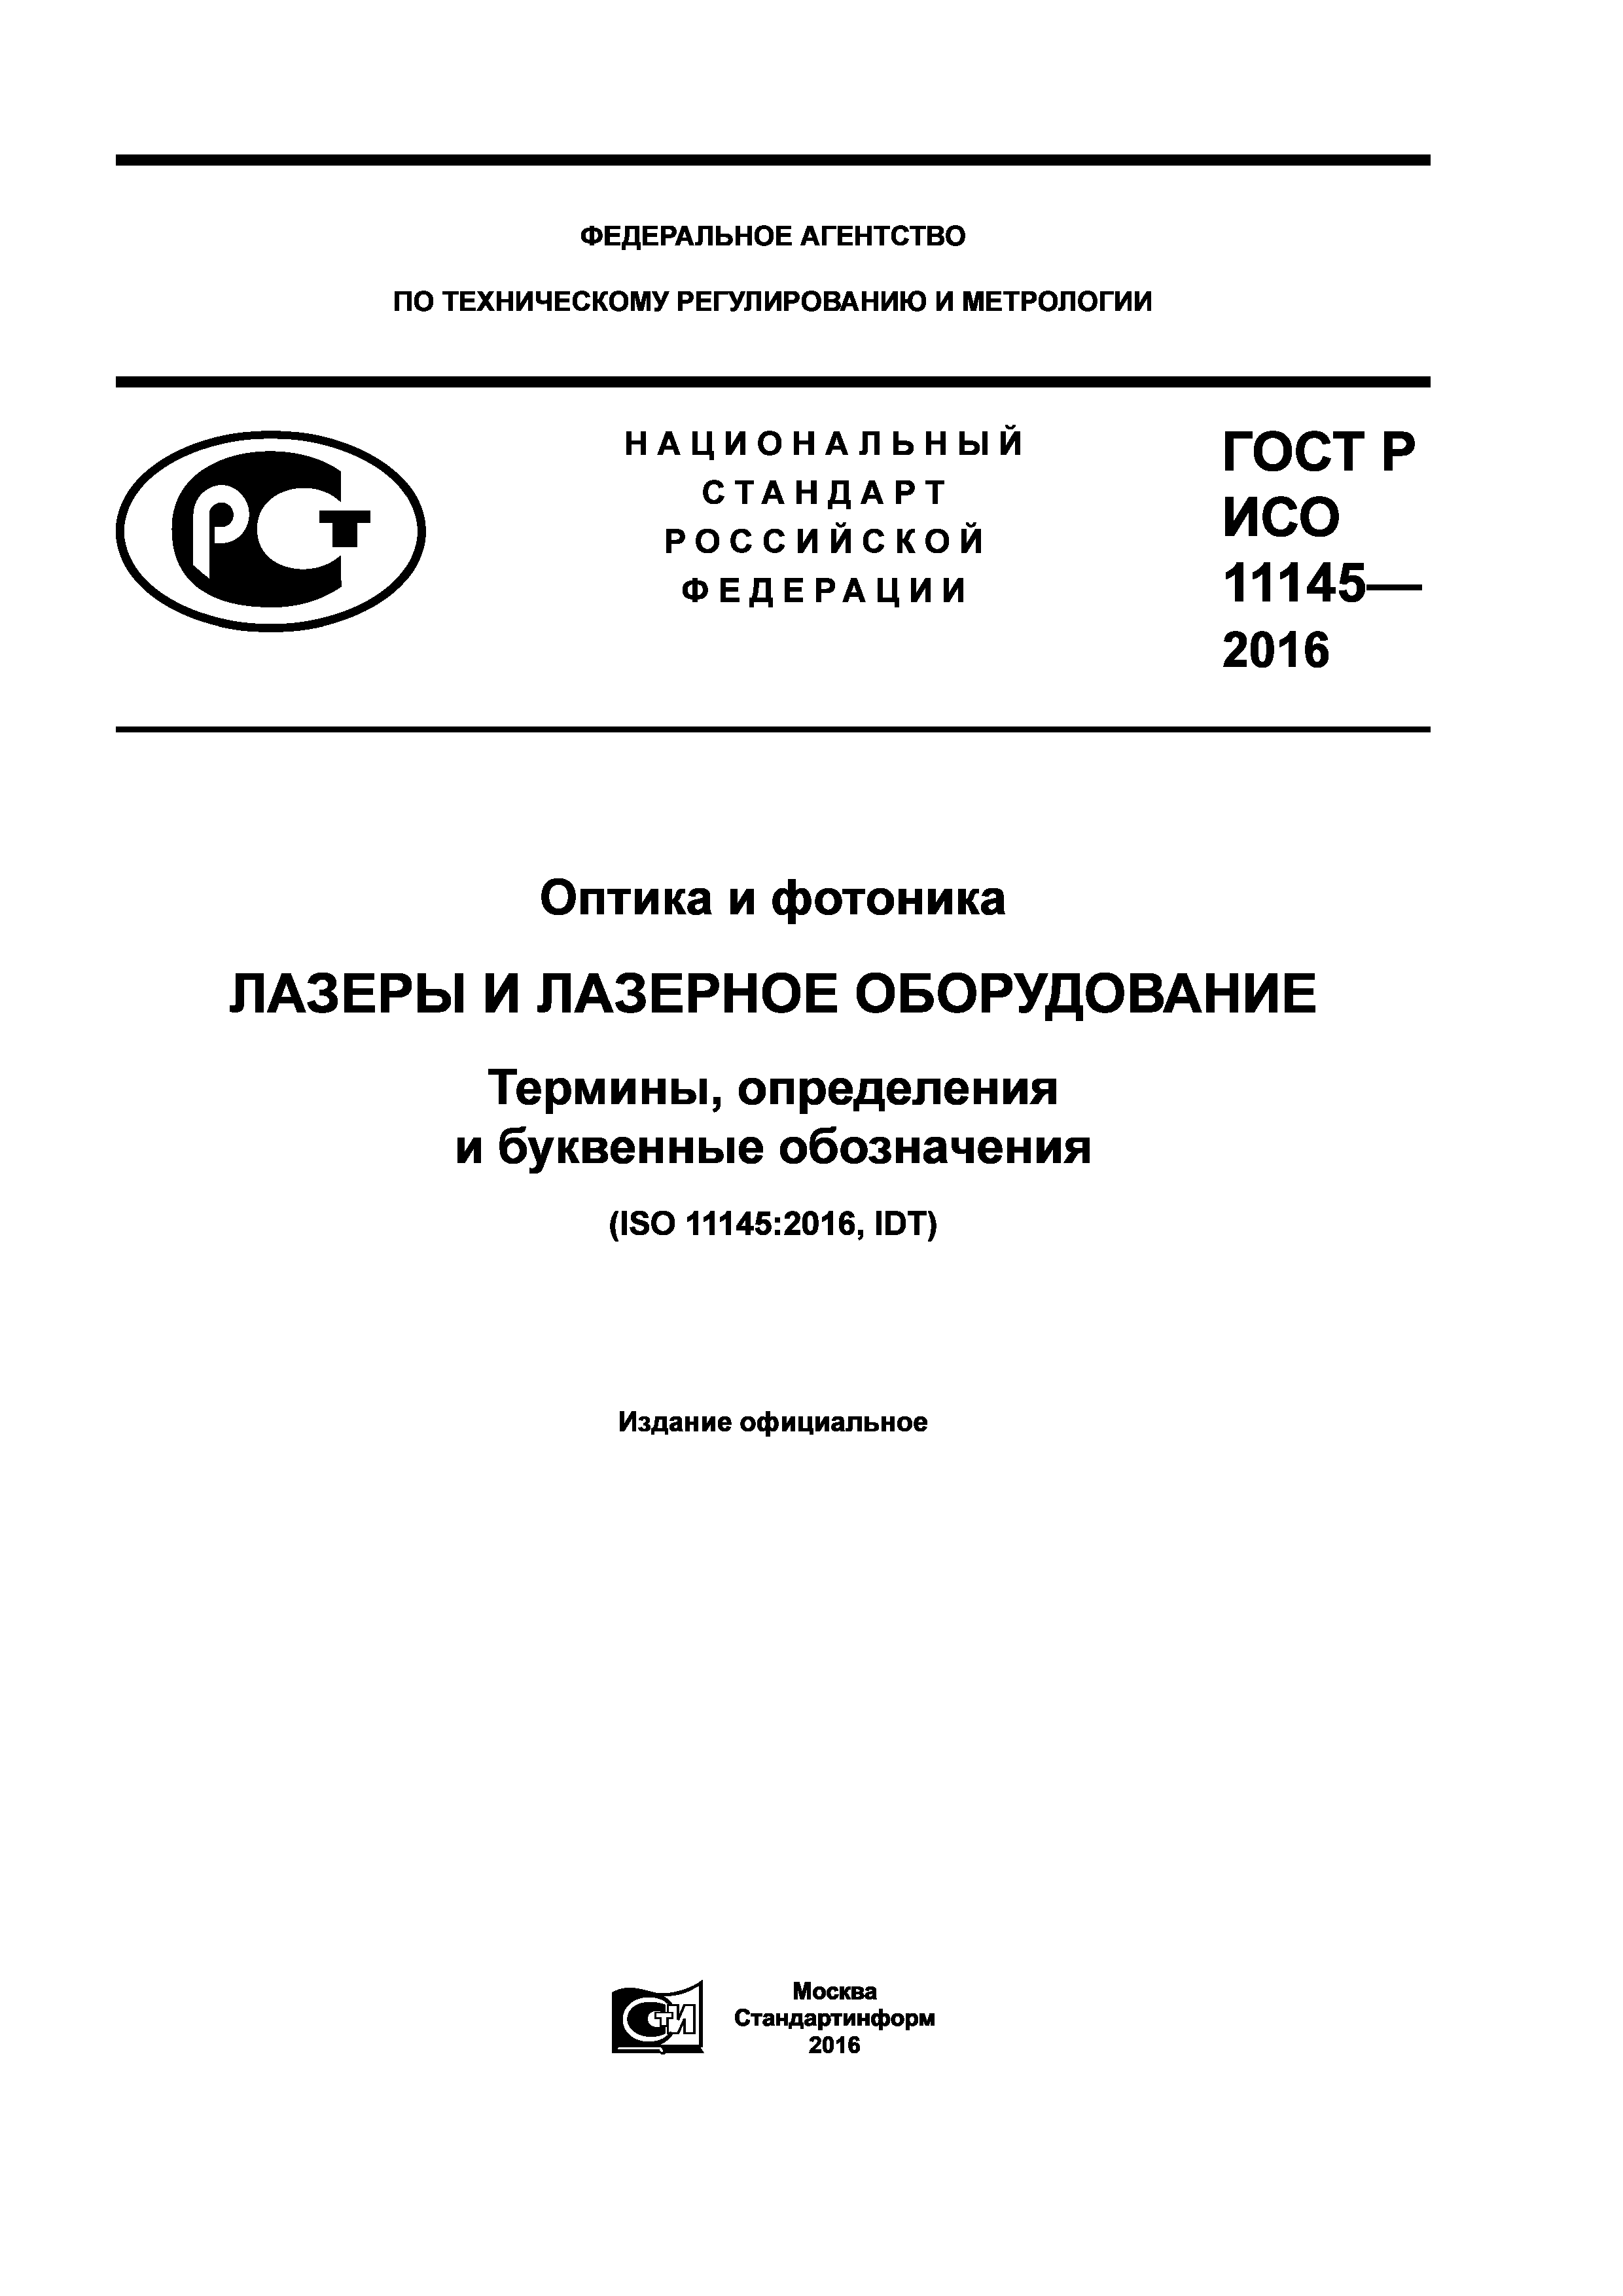 ГОСТ Р ИСО 11145-2016